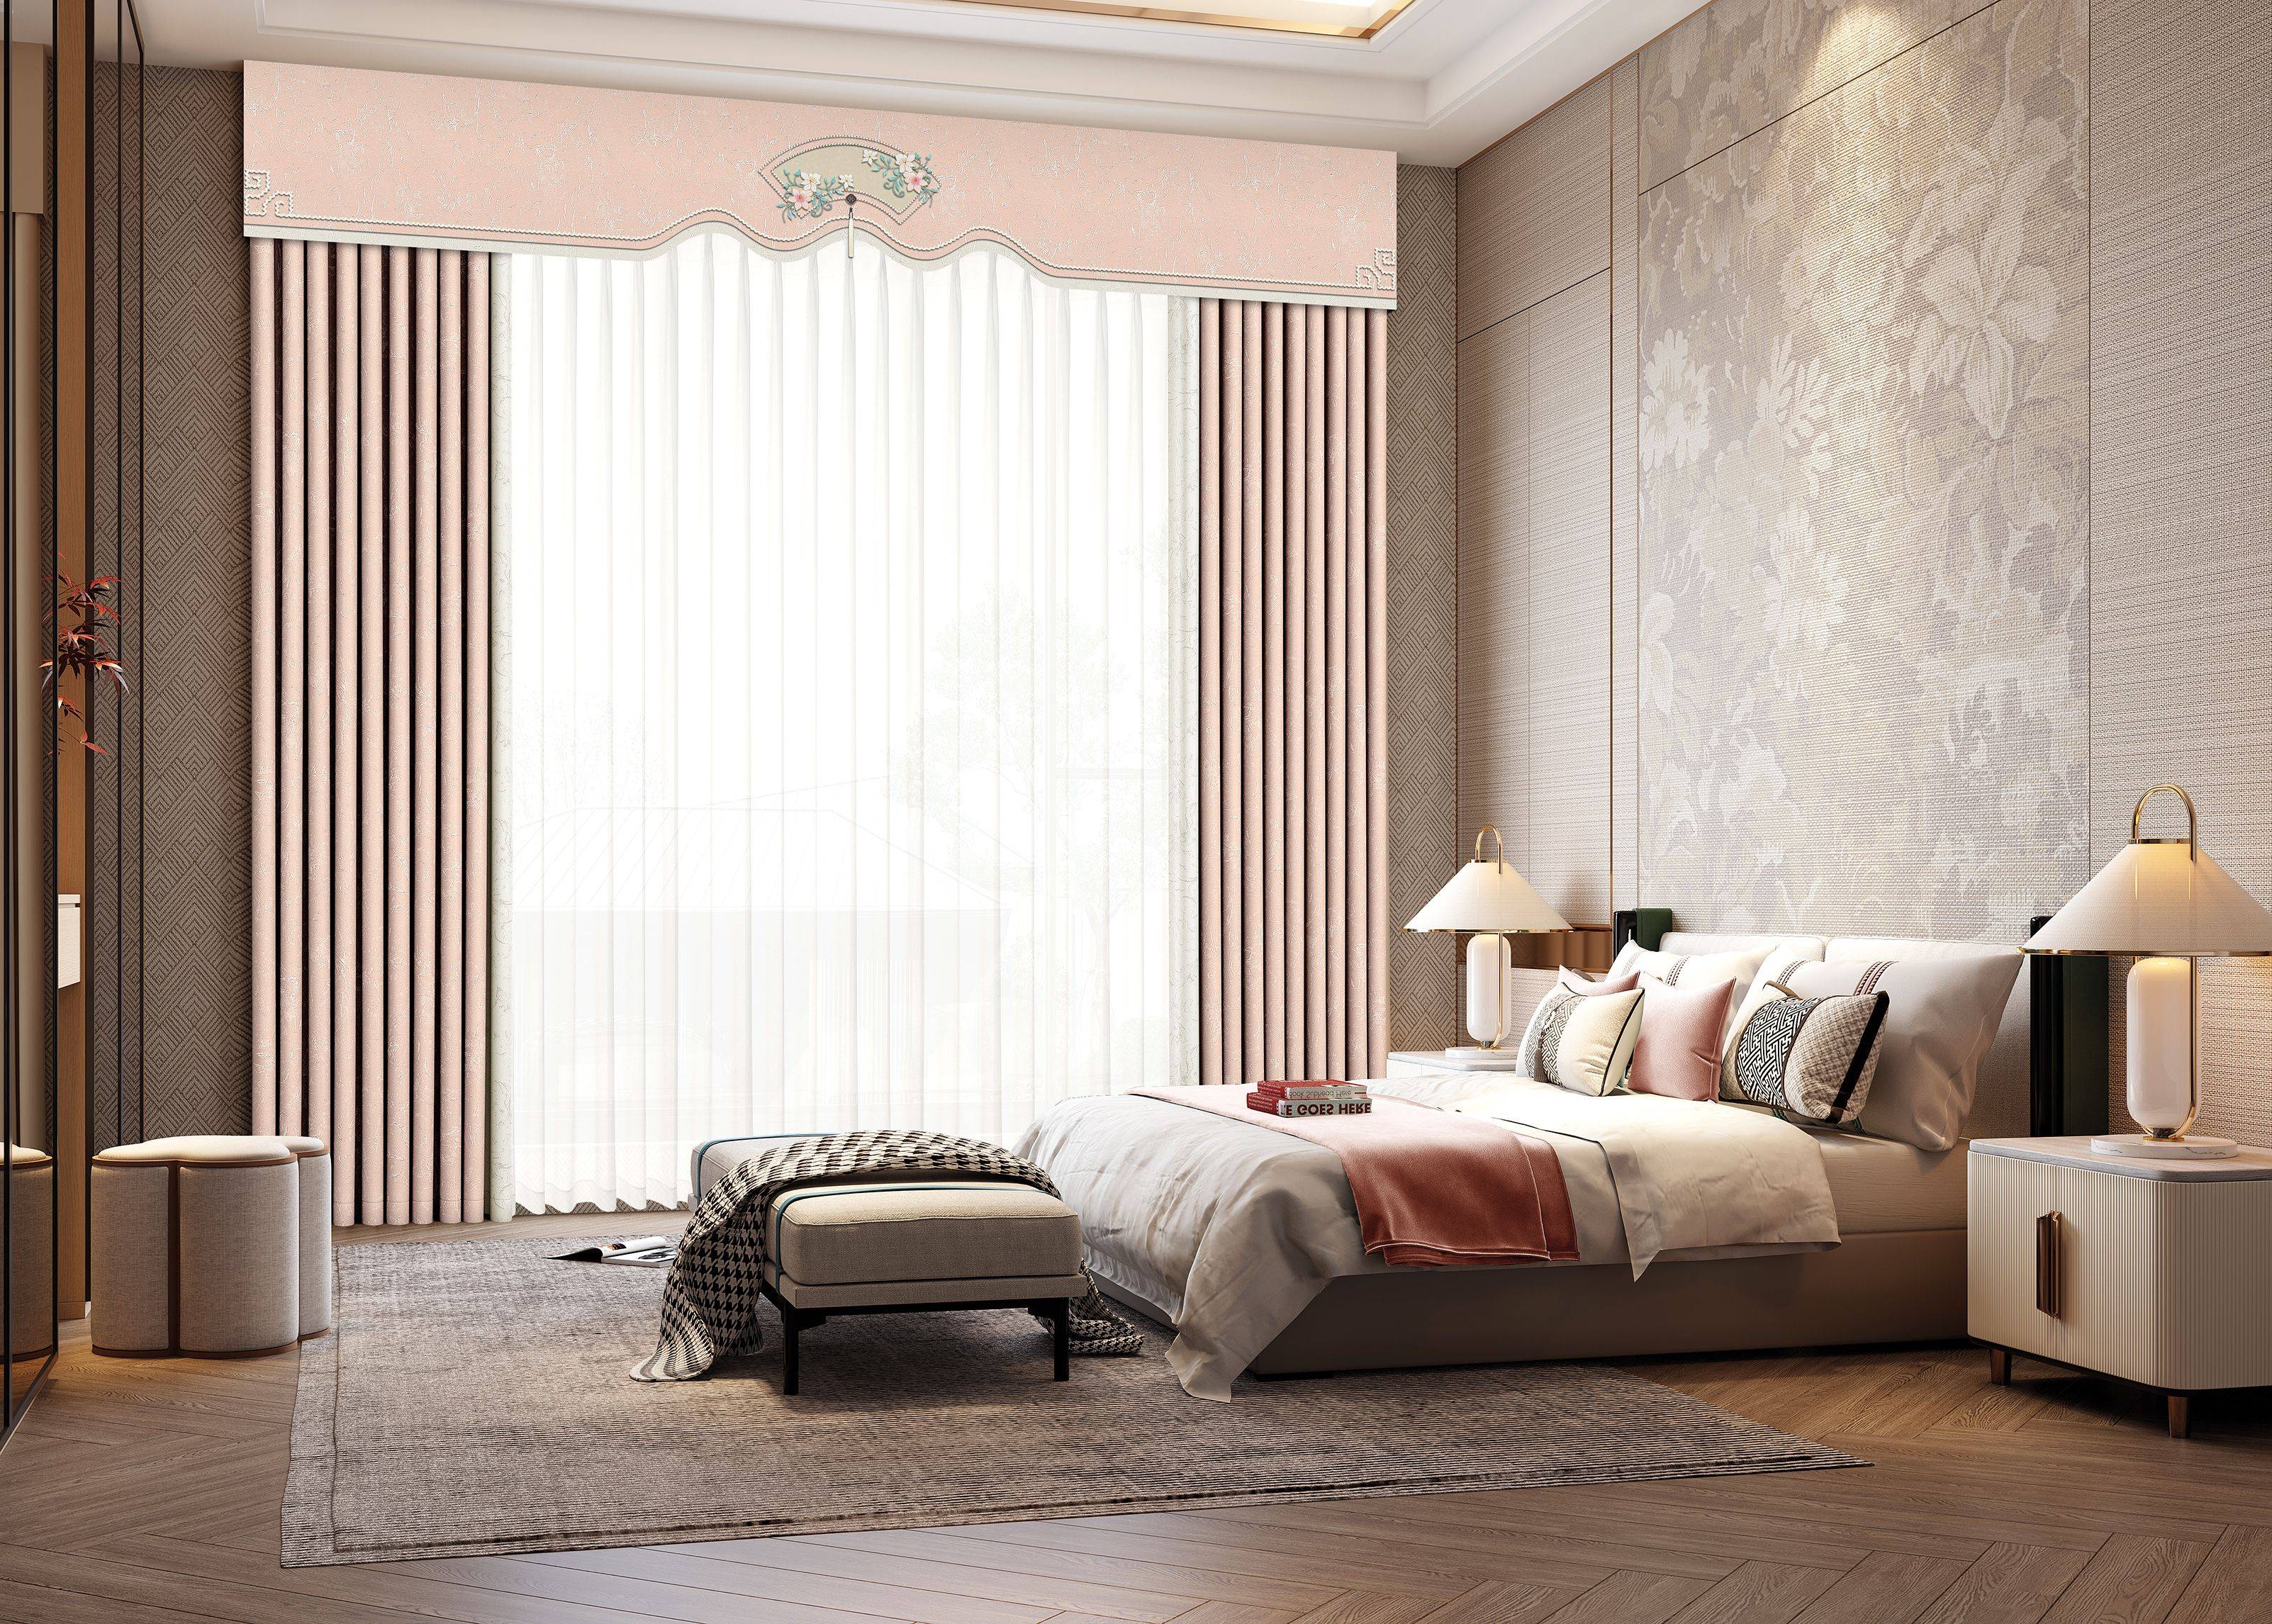 窗帘的颜色应与客厅的墙面和家具颜色相协调